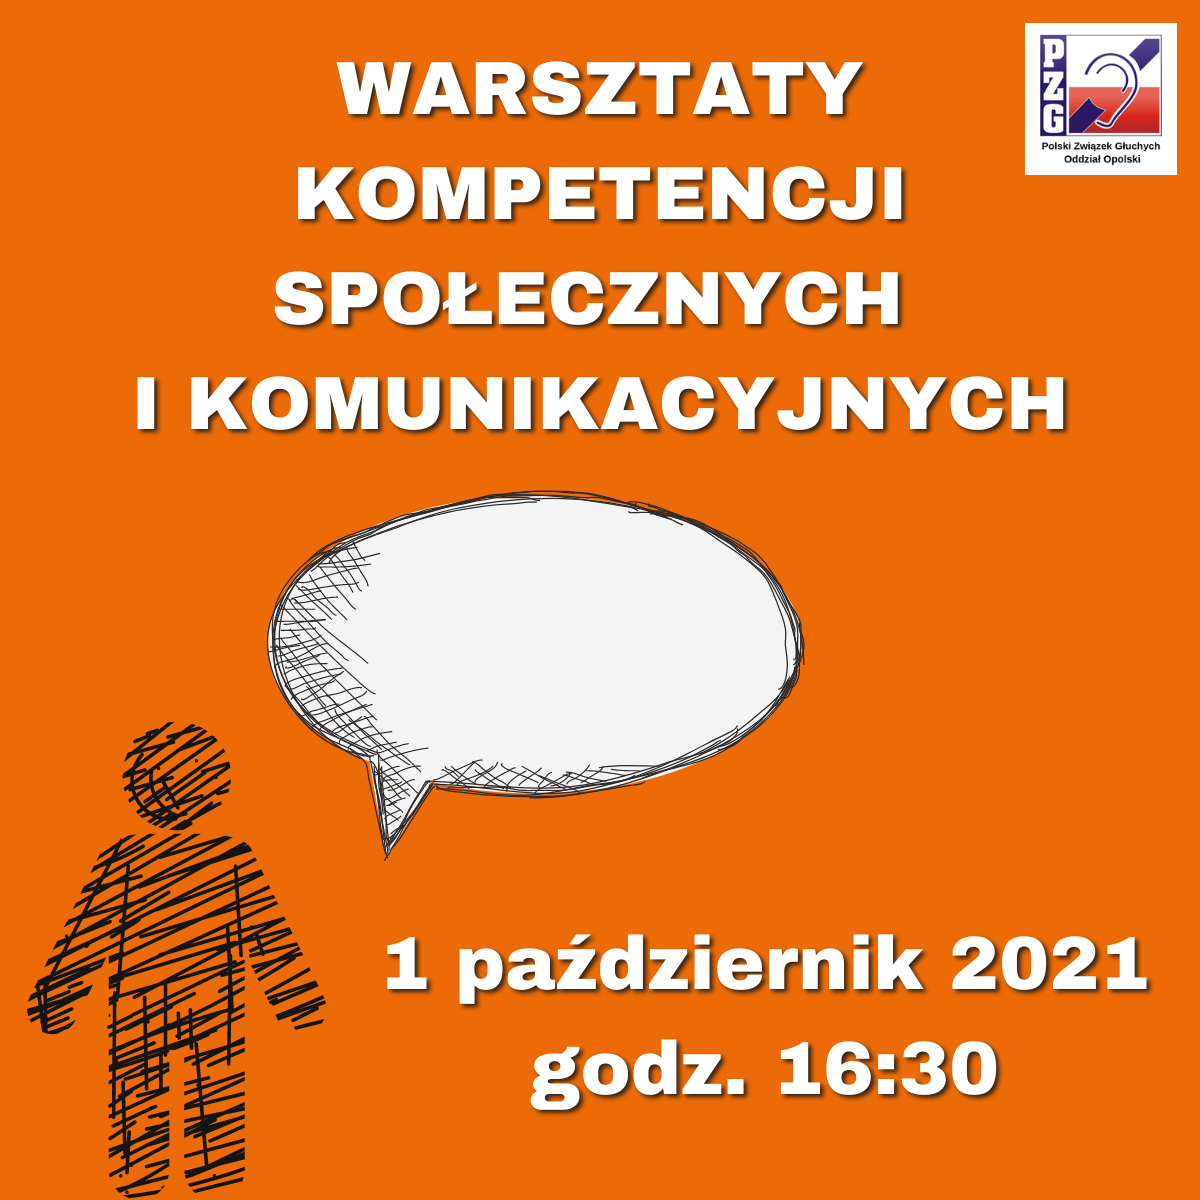 Plakat informujący o warsztatach obywatelskich. Na plakacie narysowana postać z dymkiem symbolizującym rozmowę.